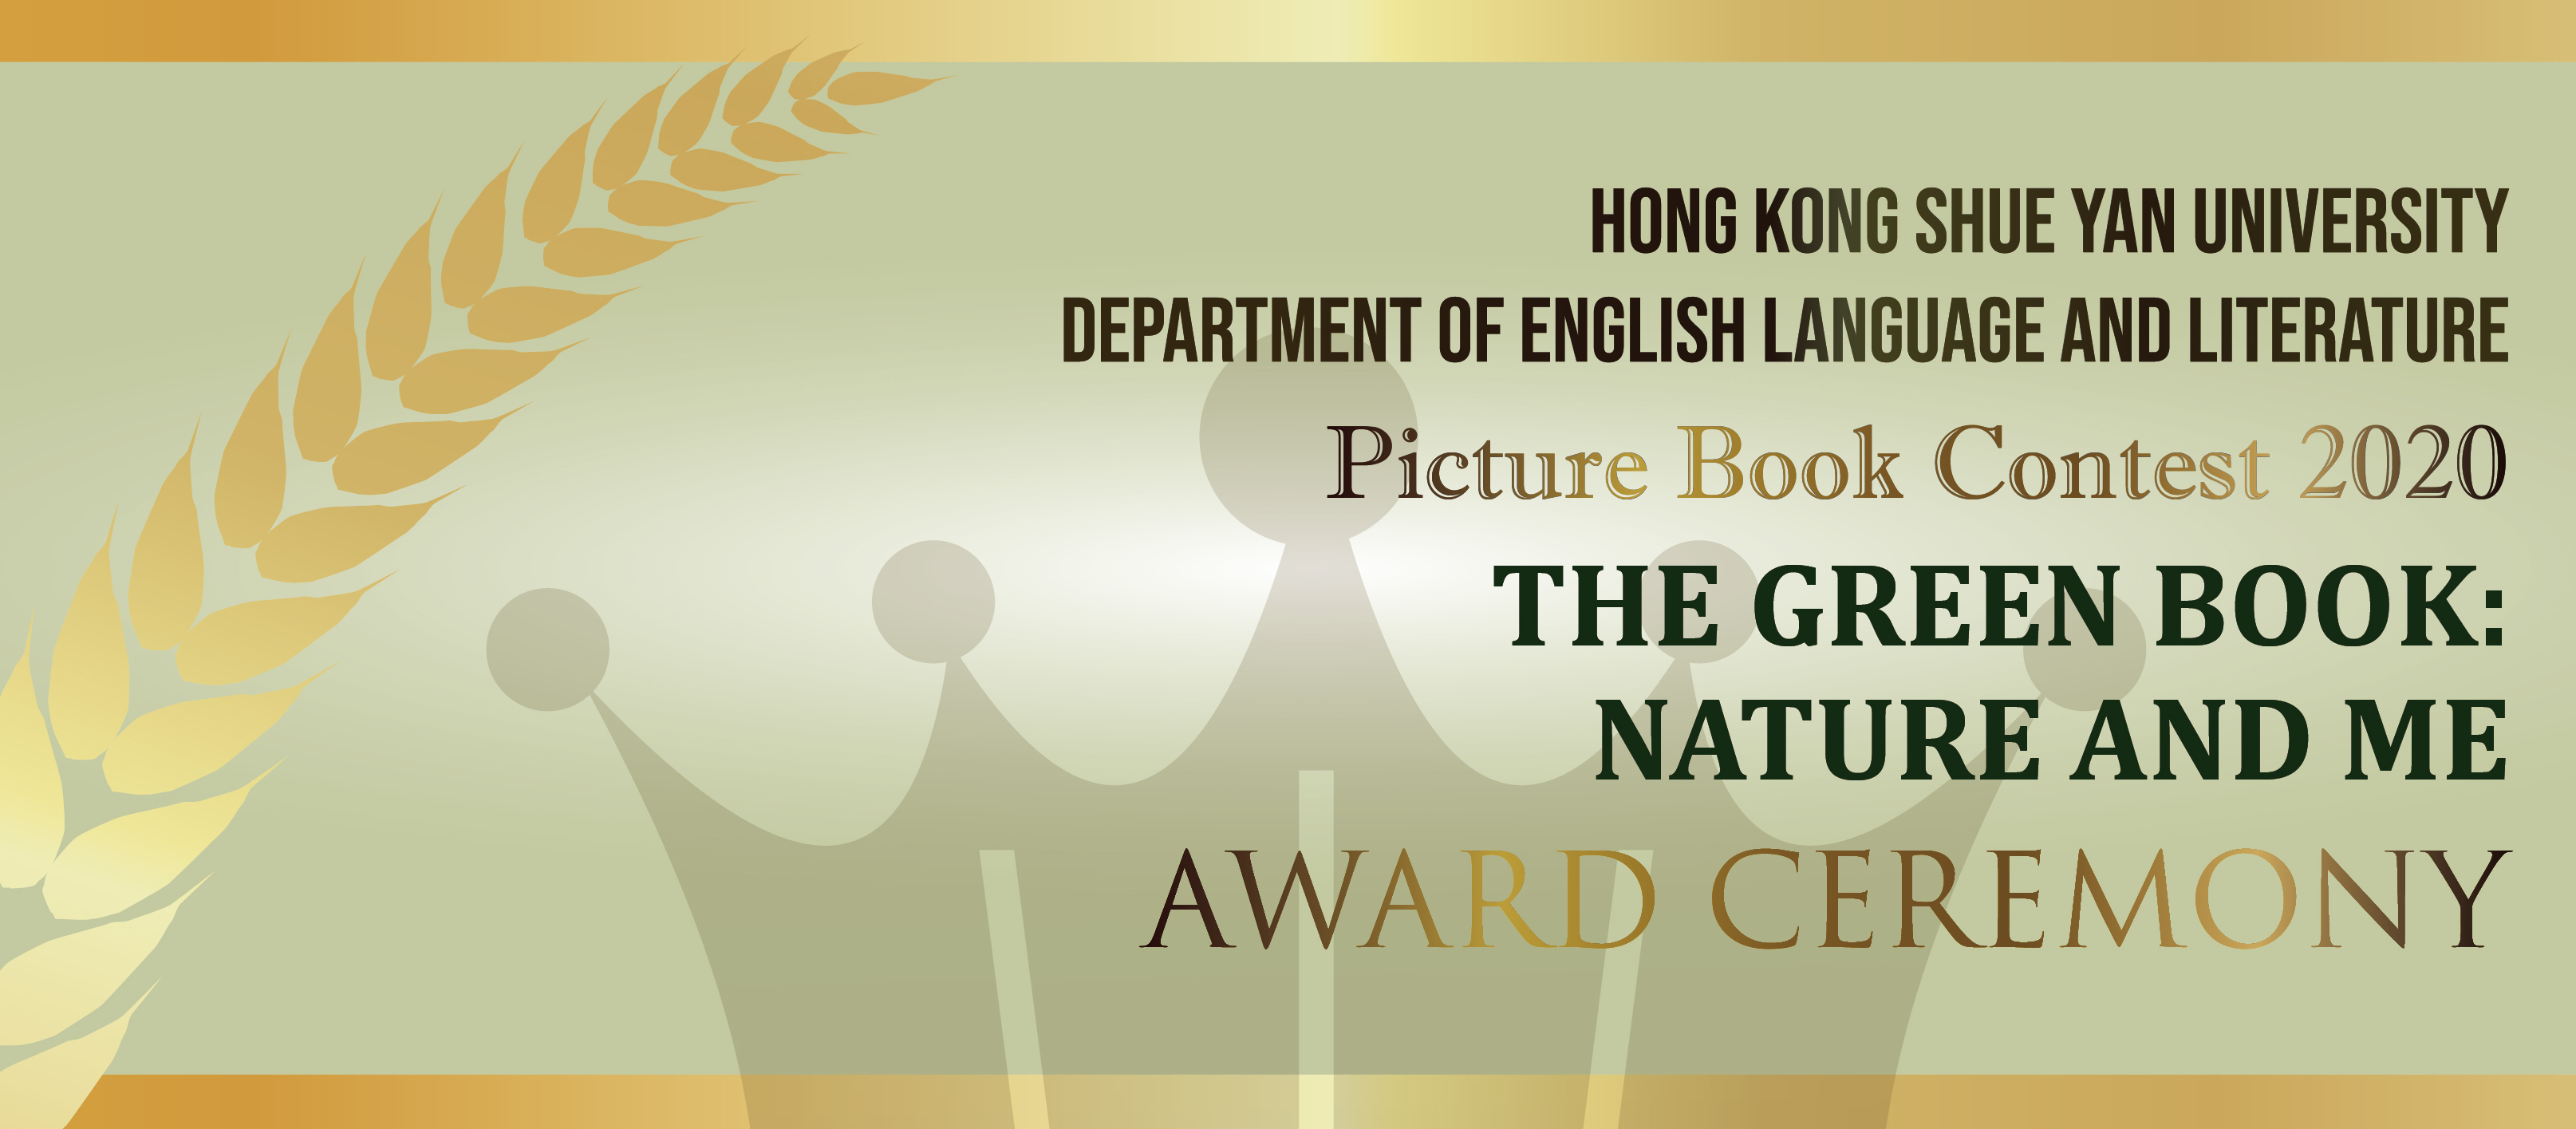 英国语言文学系「The Green Book: Nature and Me」绘本创作比赛2020颁奖典礼